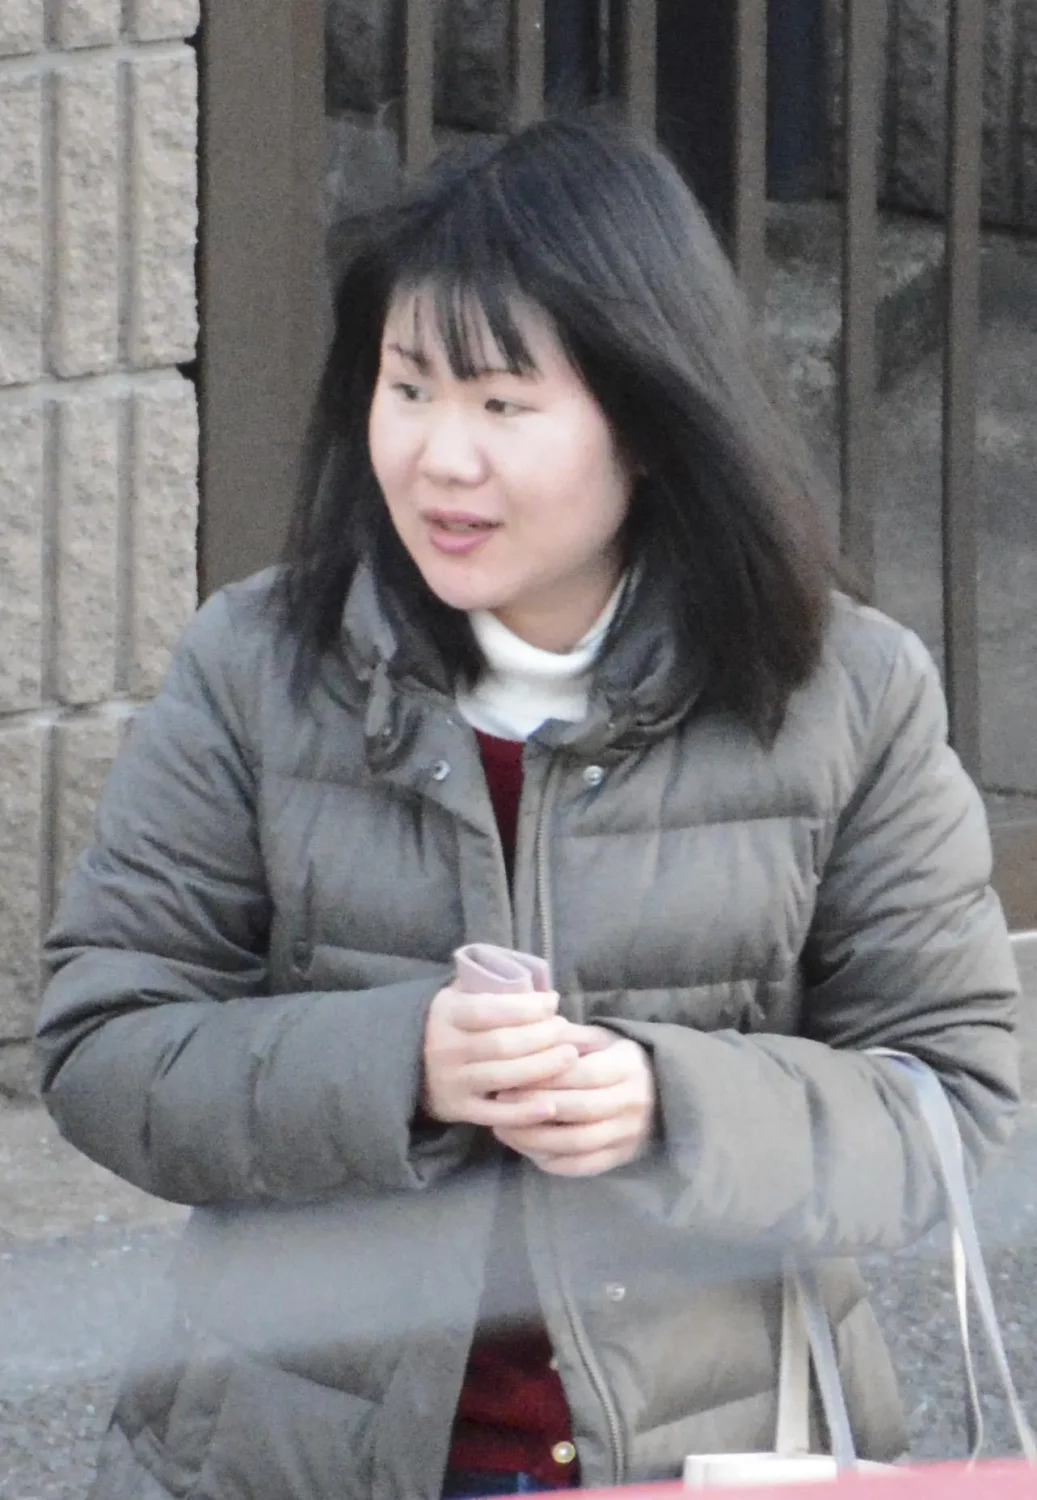 Ιαπωνία: Σε ισόβια κάθειρξη καταδικάστηκε νοσηλεύτρια για την δολοφονία ασθενών